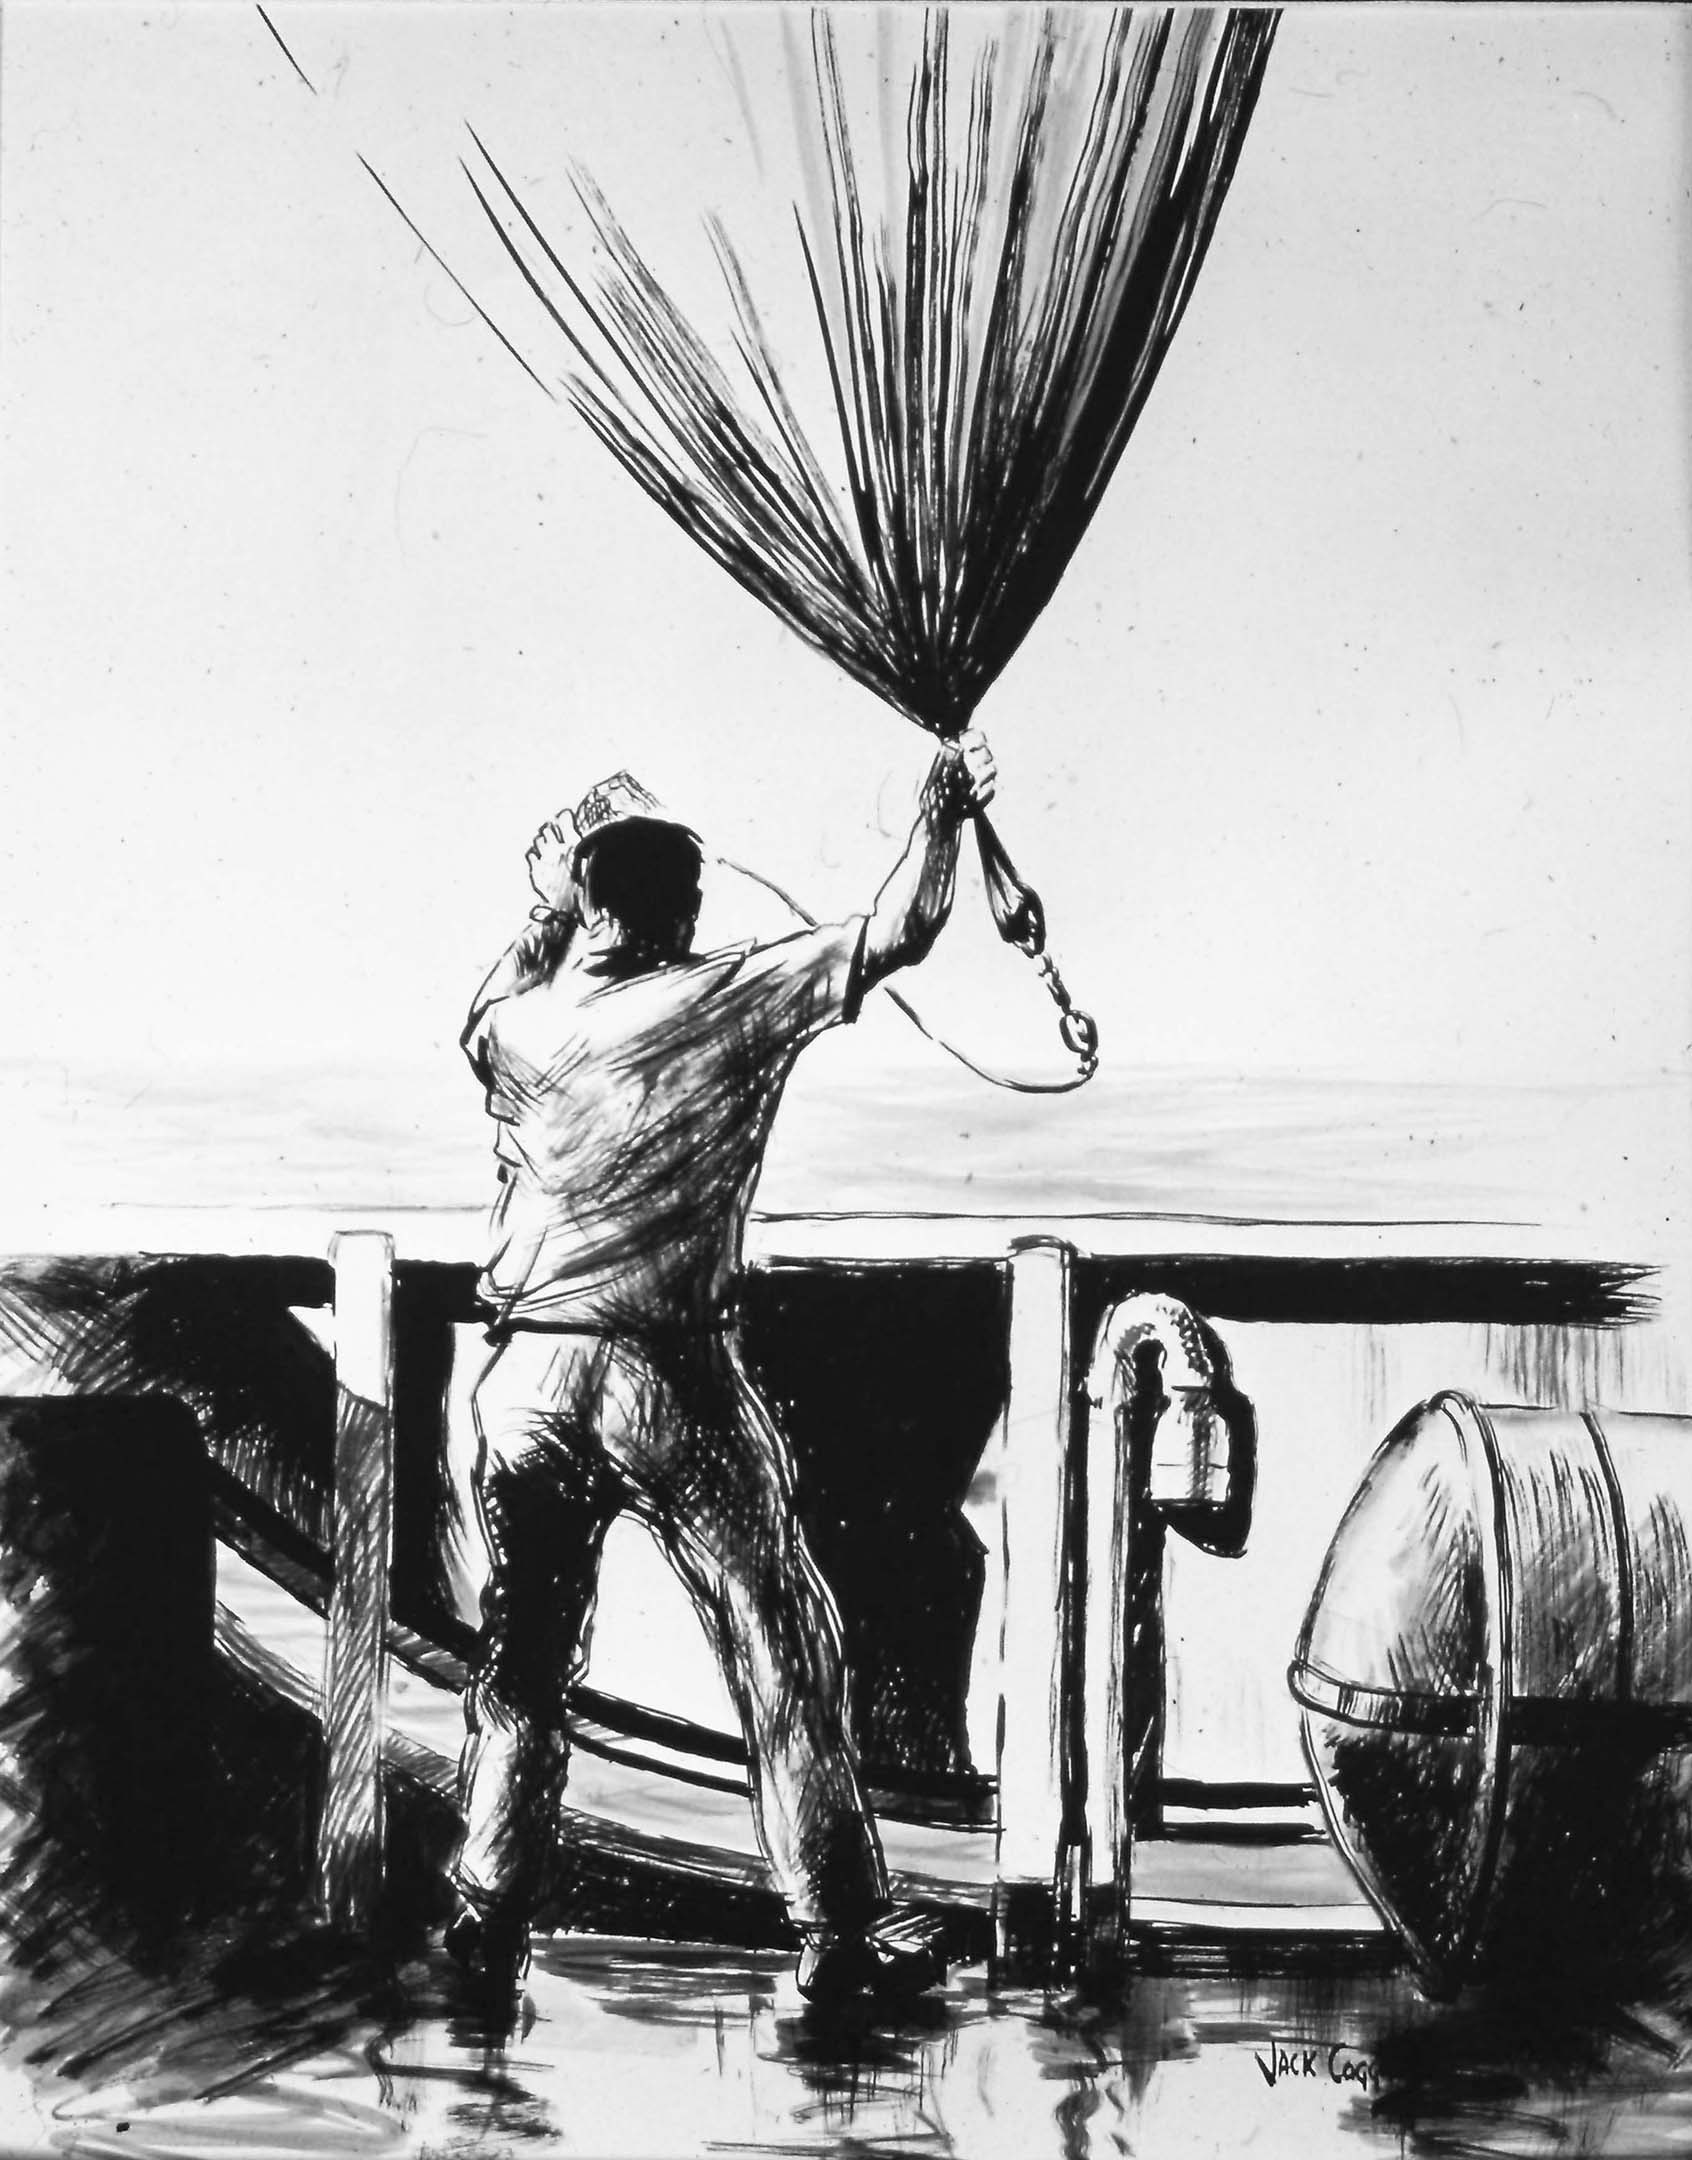 Jack Coggins liberando un globo meteorológico en la nave DISCOVERER de la NOAA. Dibujo. Diapositiva en color de 35 mm, 1969. Fuente: Harris B. Stewart